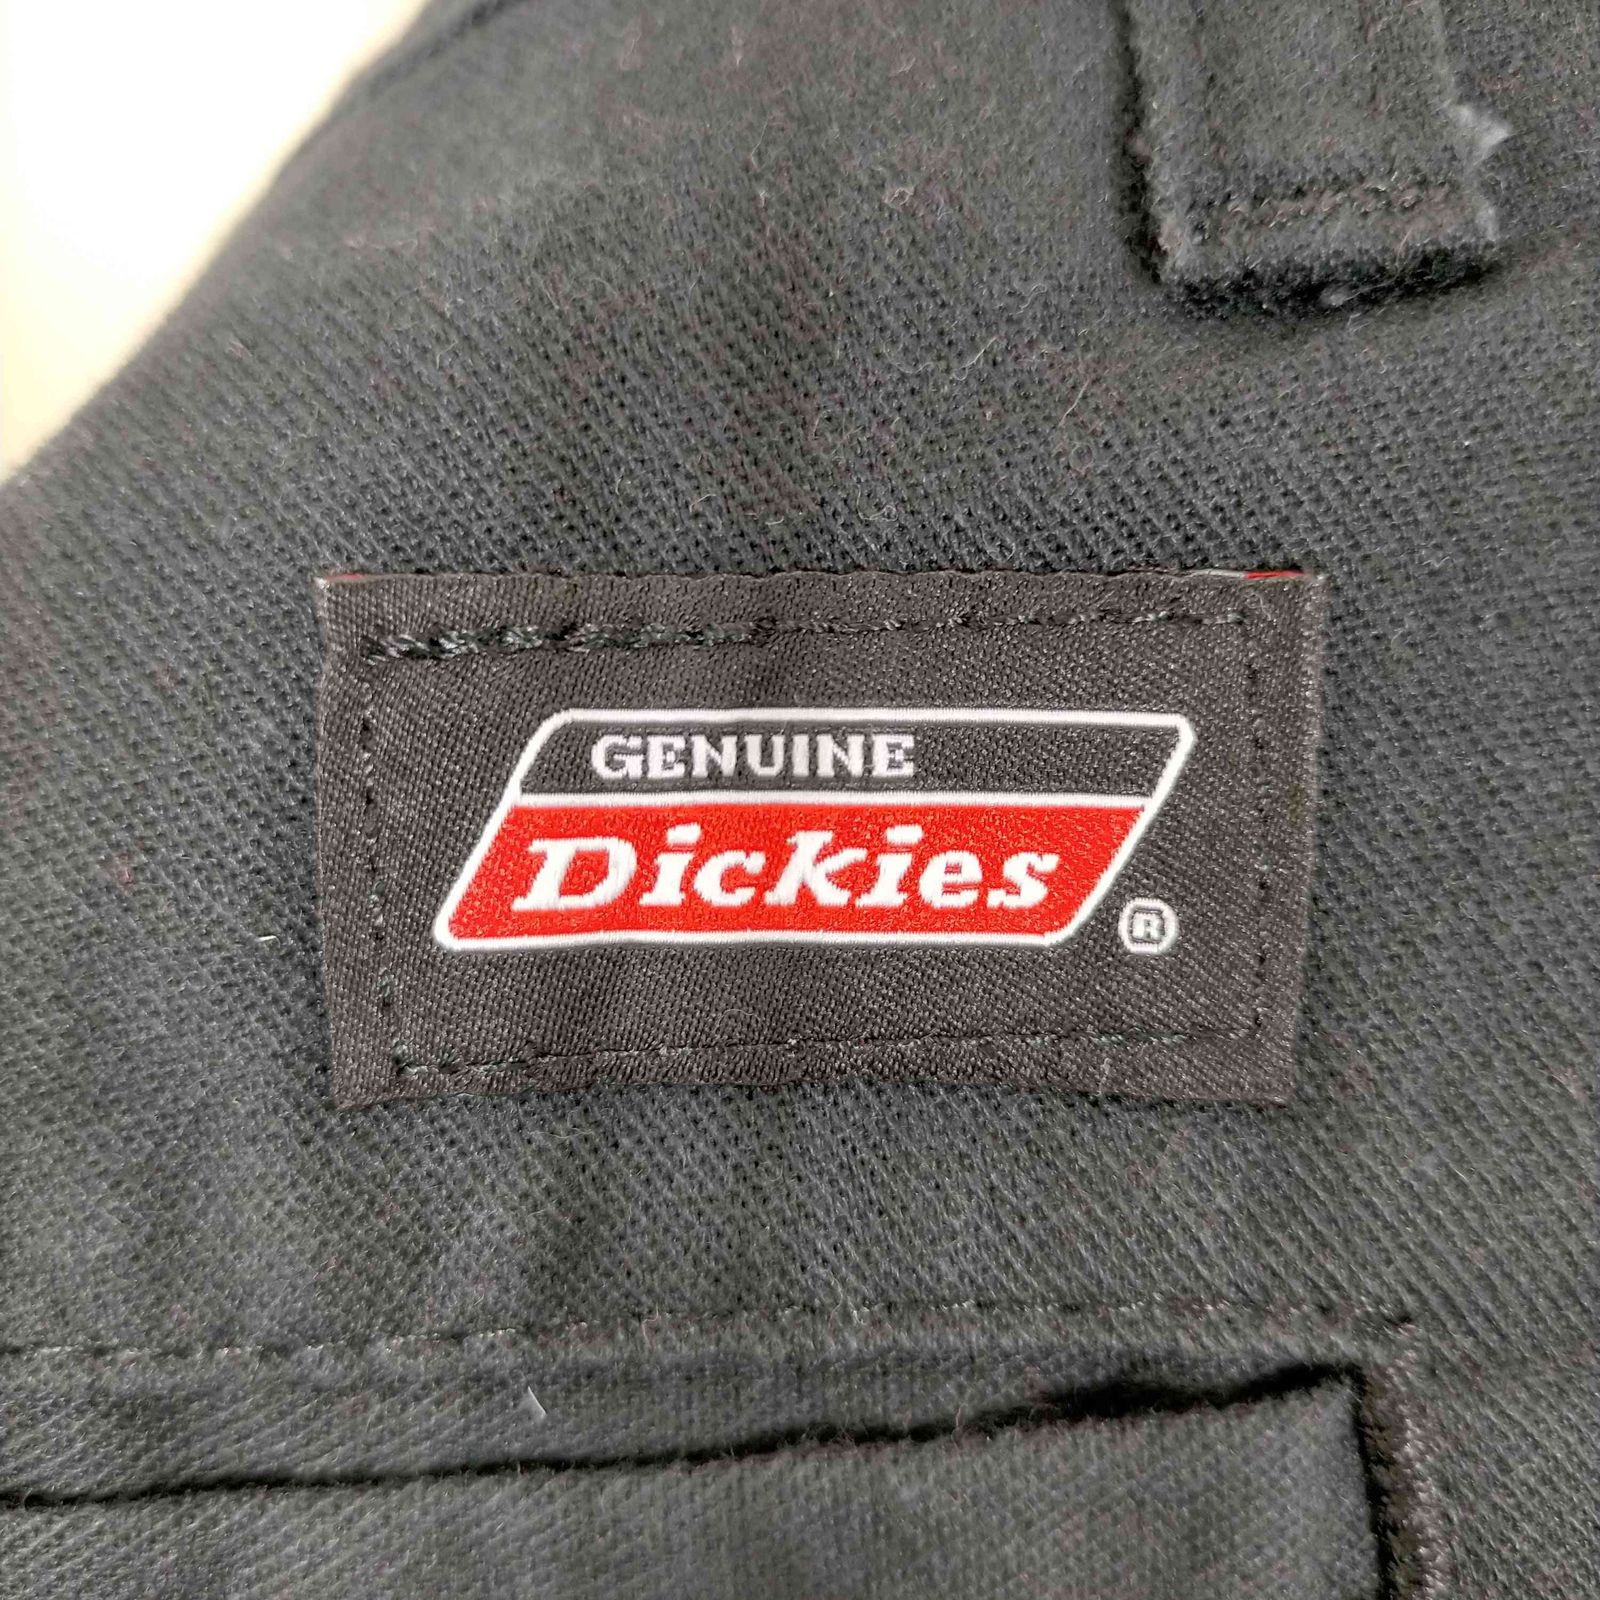 ディッキーズ Dickies ワークパンツ ダブルニー メンズ 36×30 メルカリShops